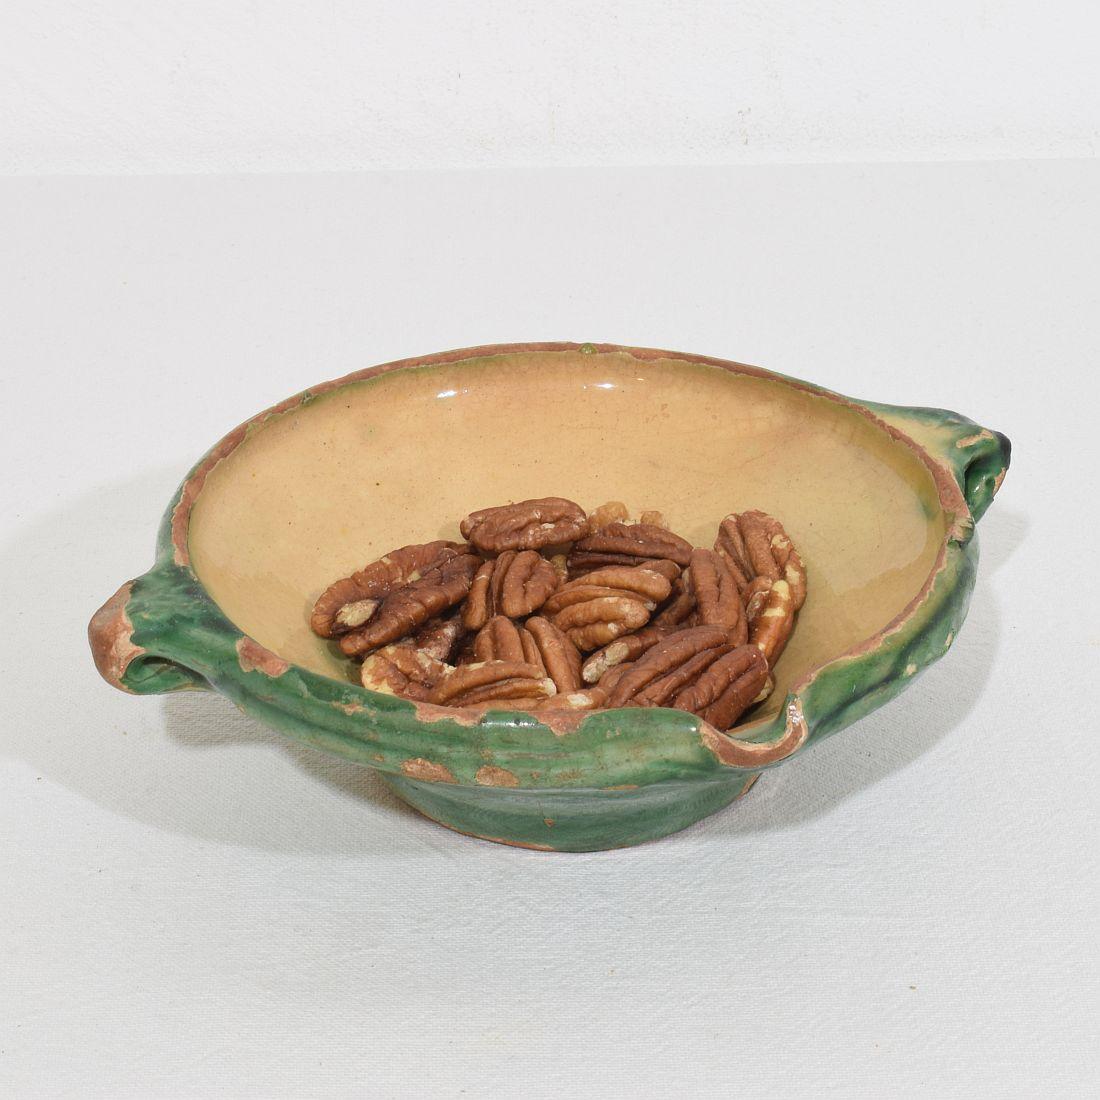 Belle pièce de poterie de Provence, usée par les intempéries. Superbe couleur et petite taille rare.
Il est très agréable de l'utiliser comme pièce de service.
France, vers 1850
Bon état mais altéré.